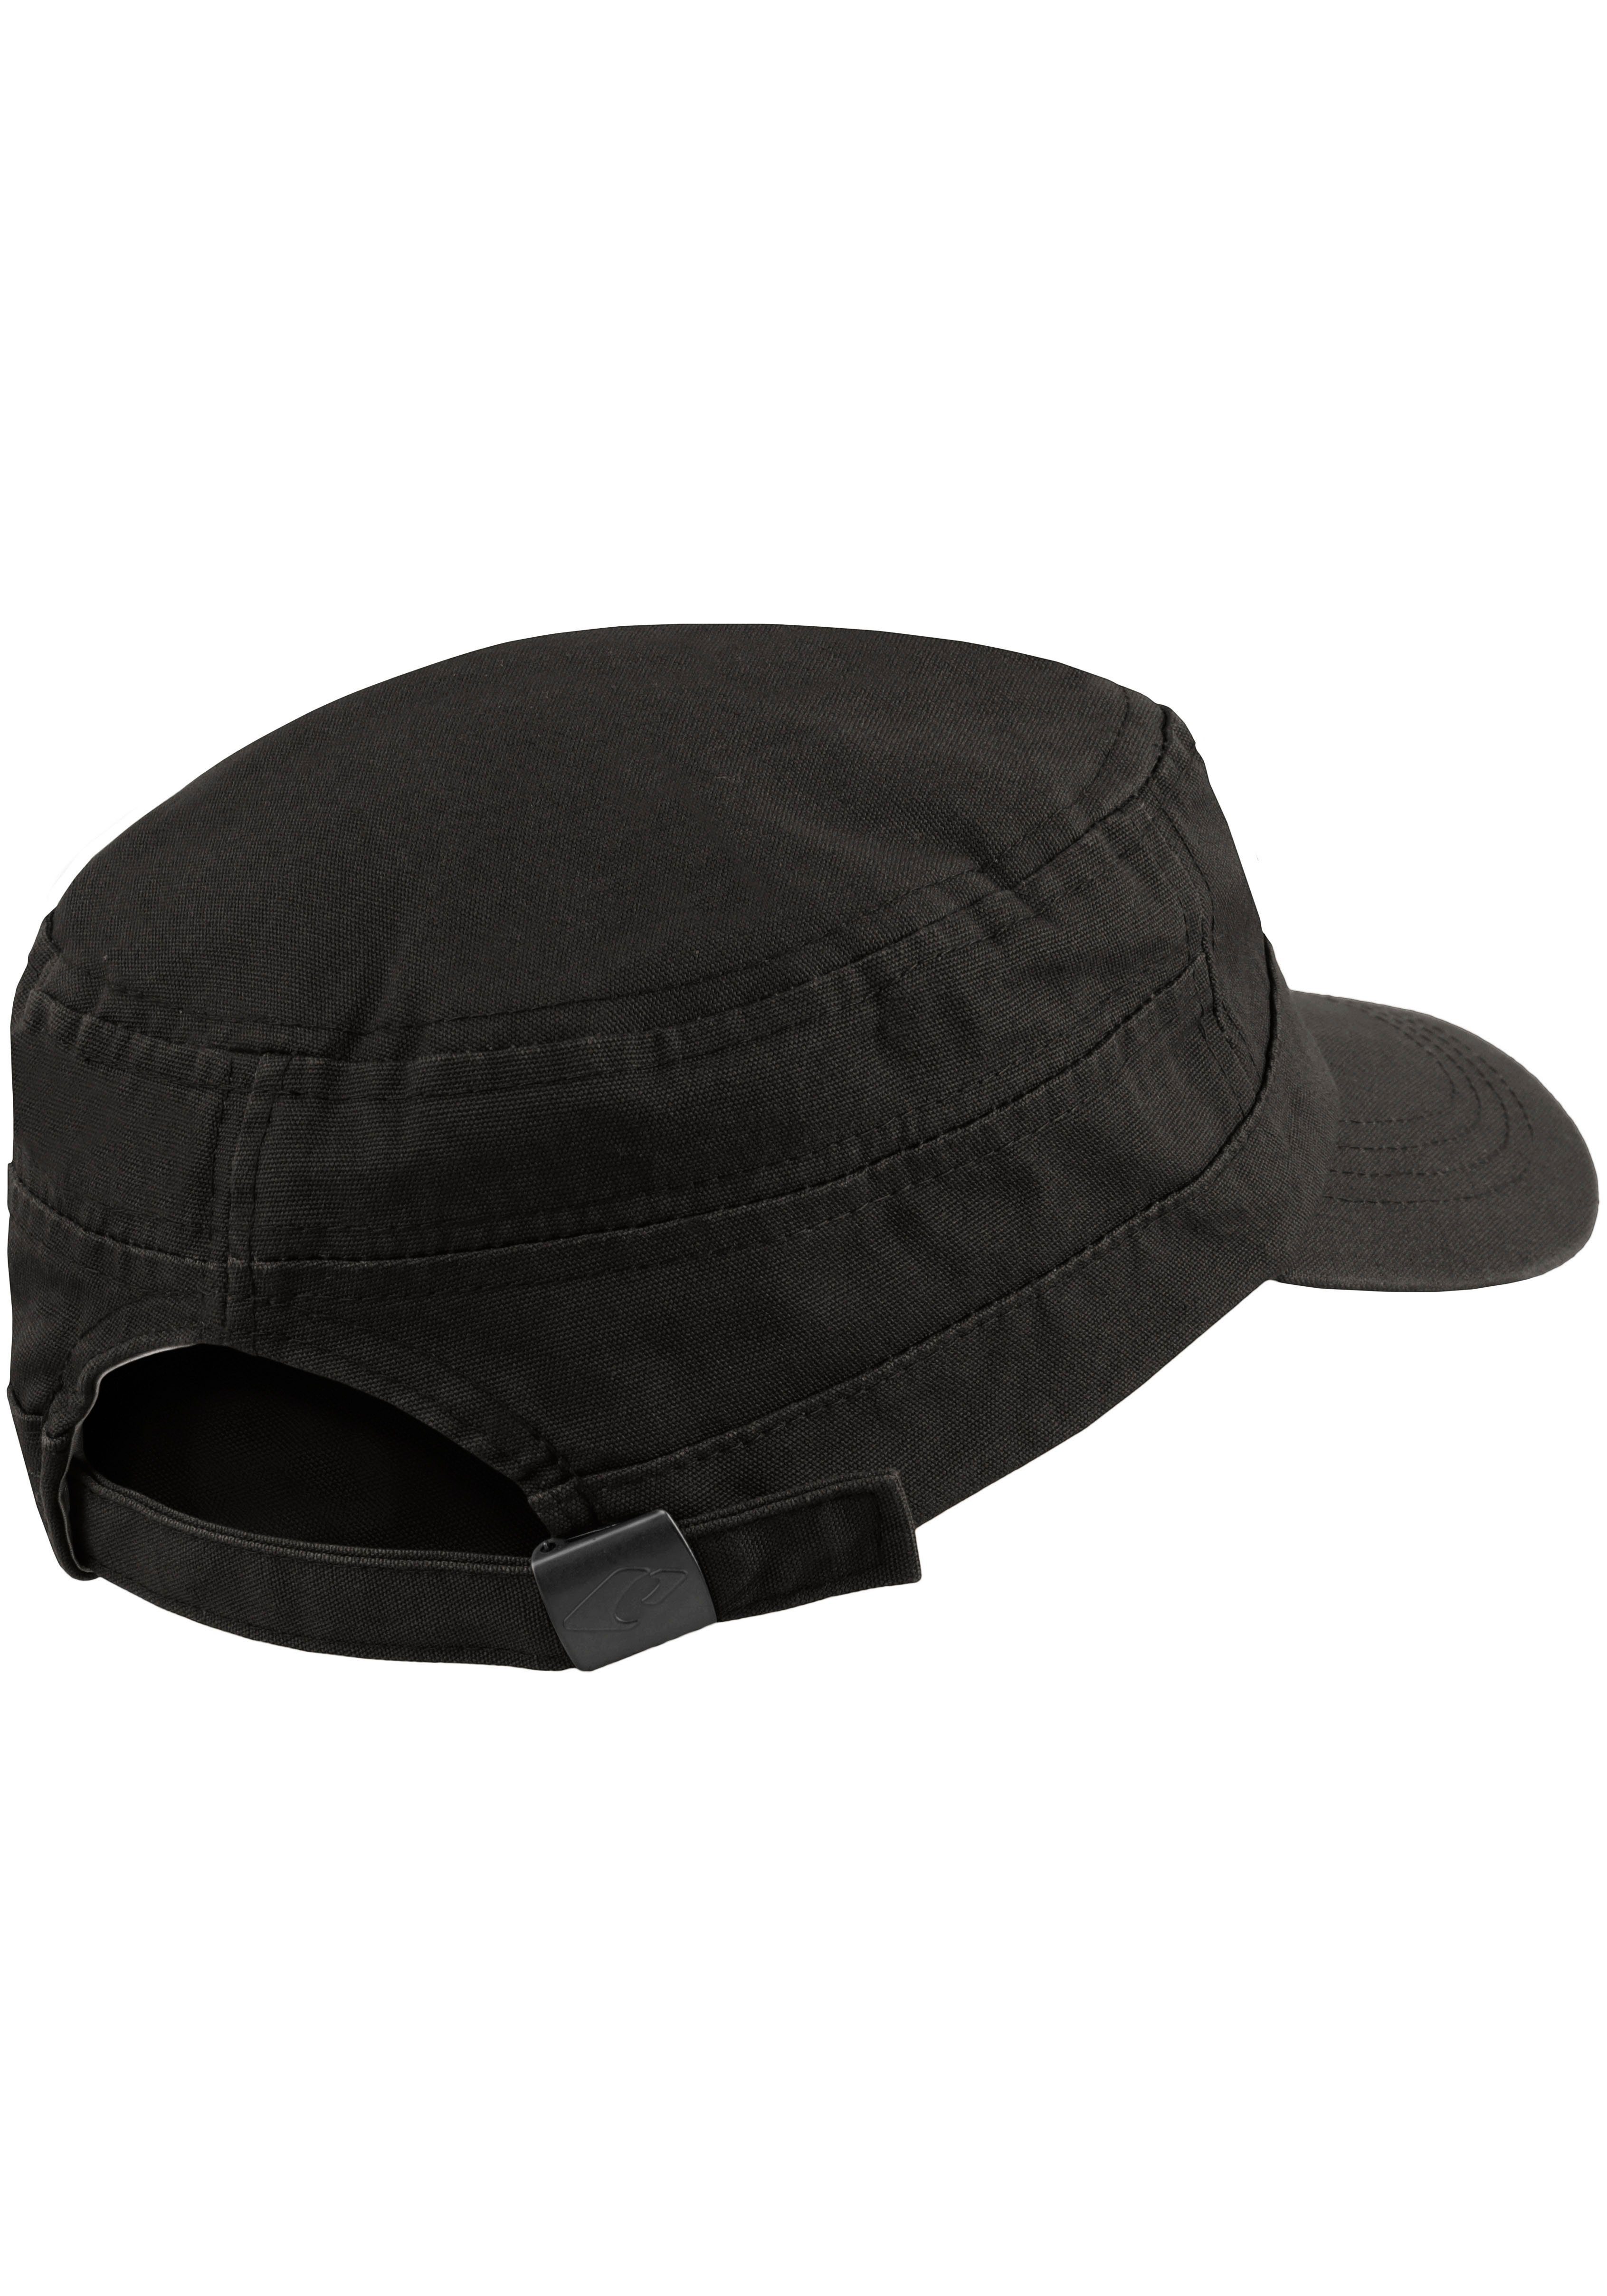 aus Cap Size Baumwolle, reiner Army chillouts Paso Hat atmungsaktiv, El One schwarz